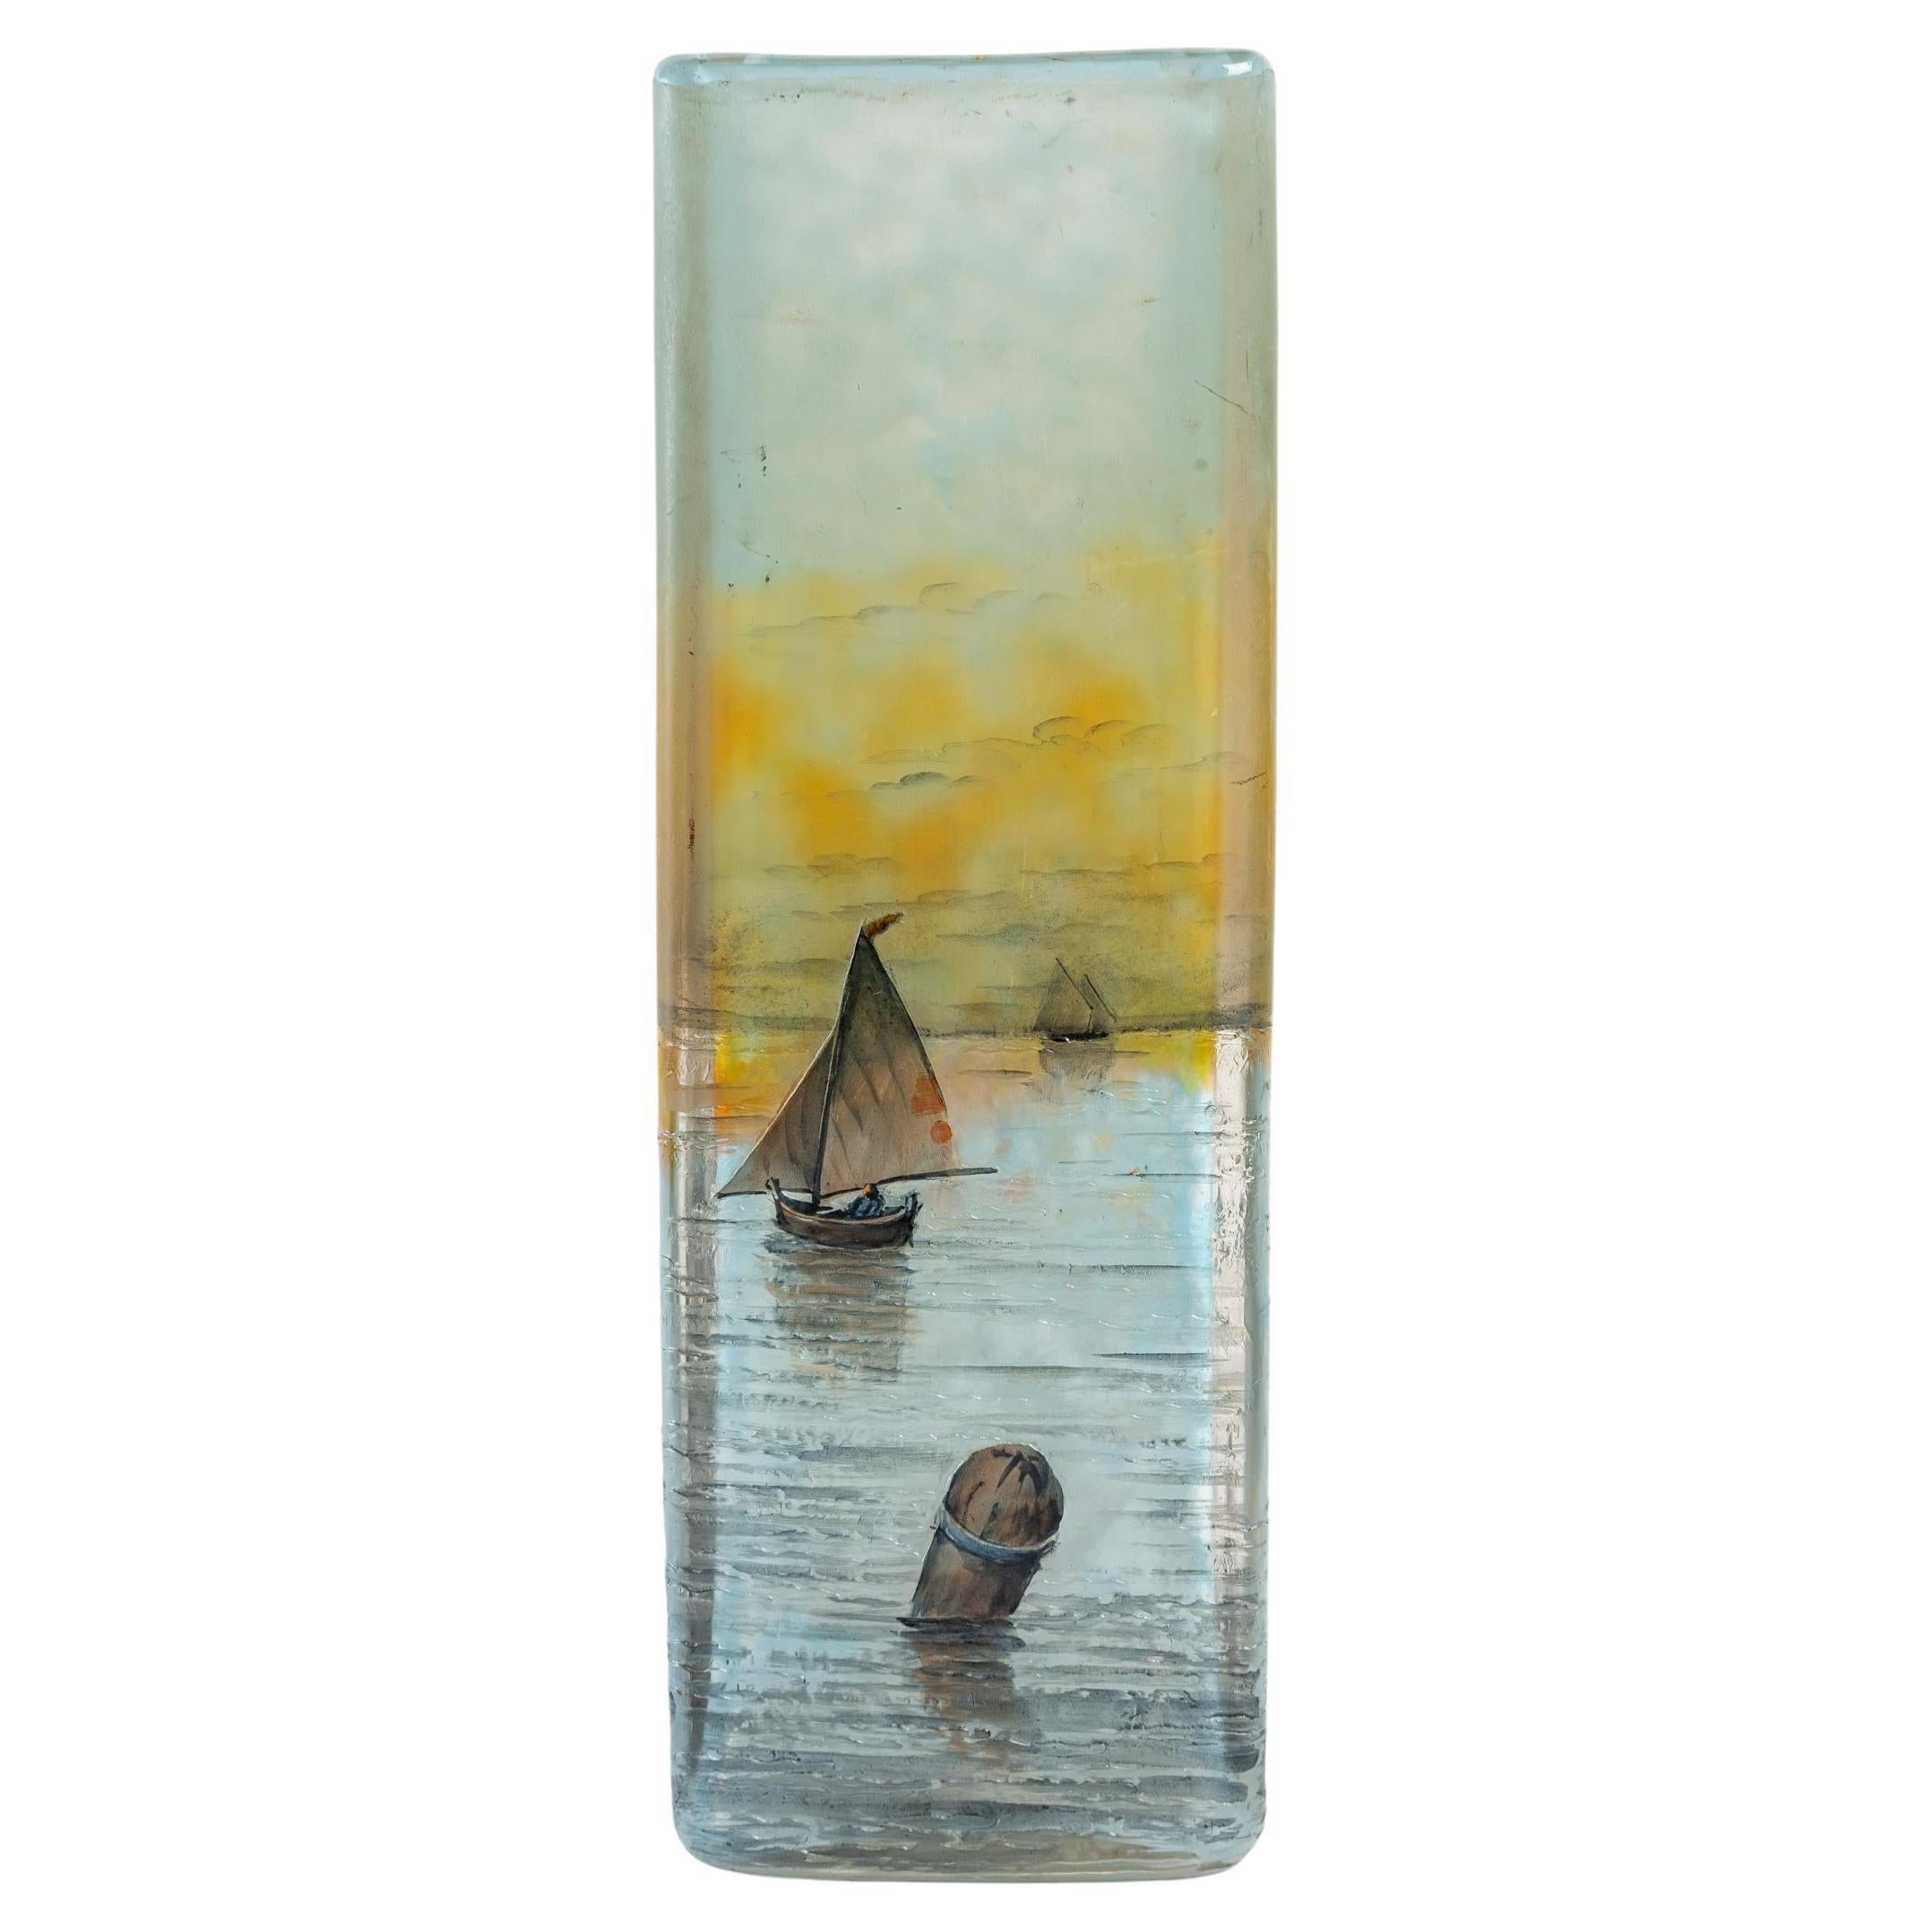 Daum Nancy glass paste, vase, 1900
Daum Nancy glass paste, vase with sailboats, boat and sea decorations, 1900
Measures: H: 19.5 cm, W: 8.5 cm, D: 6.5 cm.
  